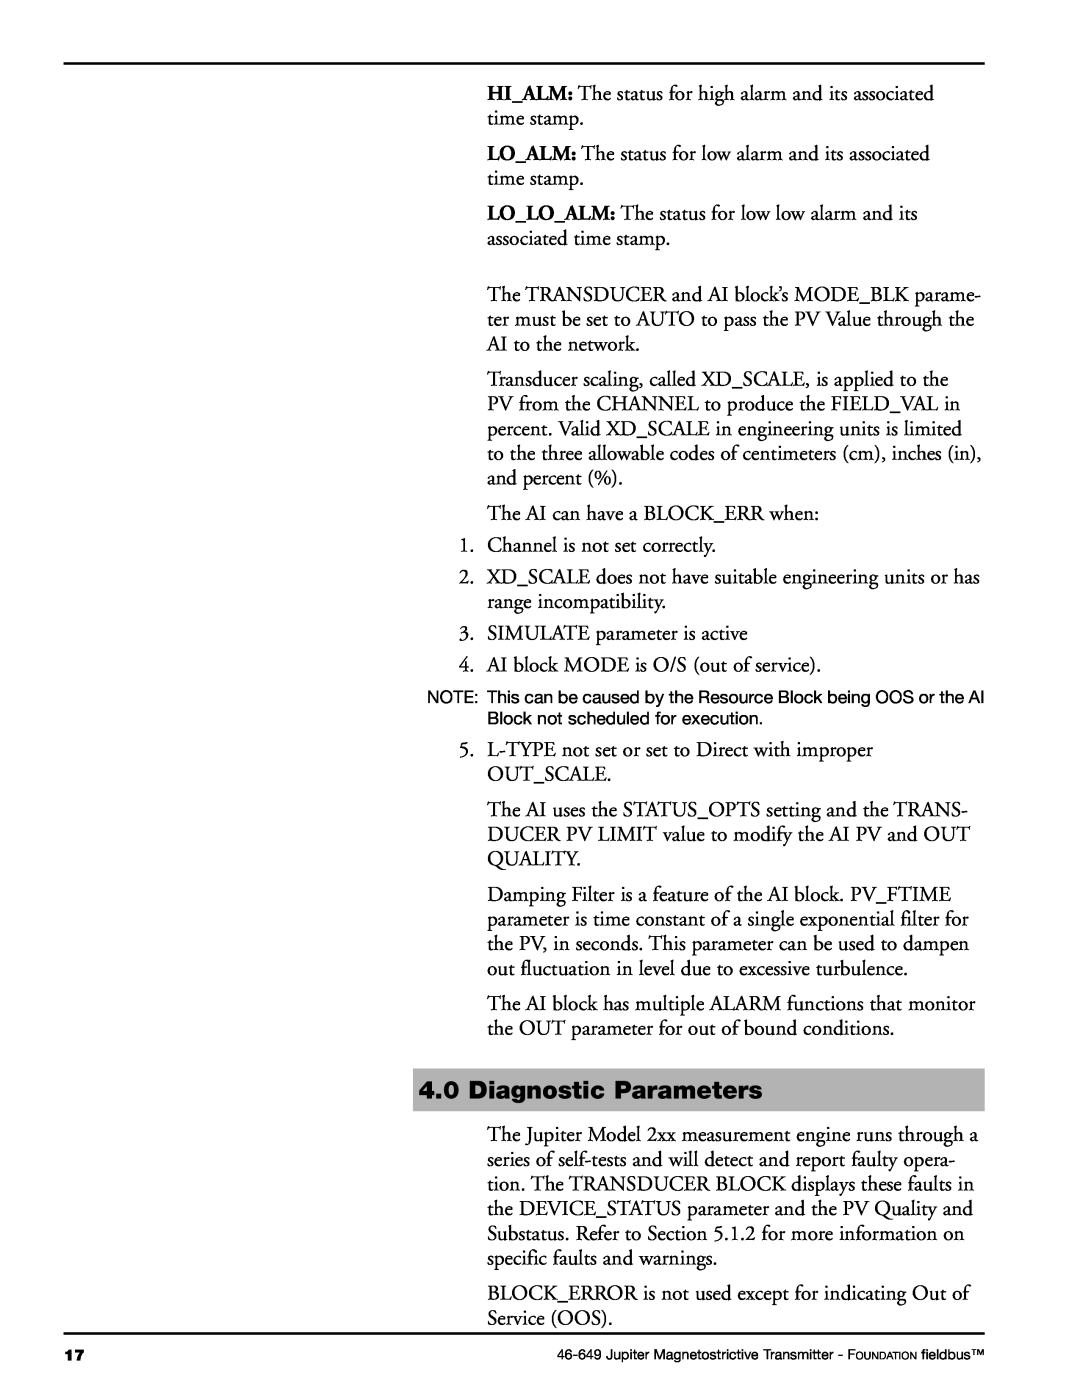 Orion 2xx manual 4.0Diagnostic Parameters 